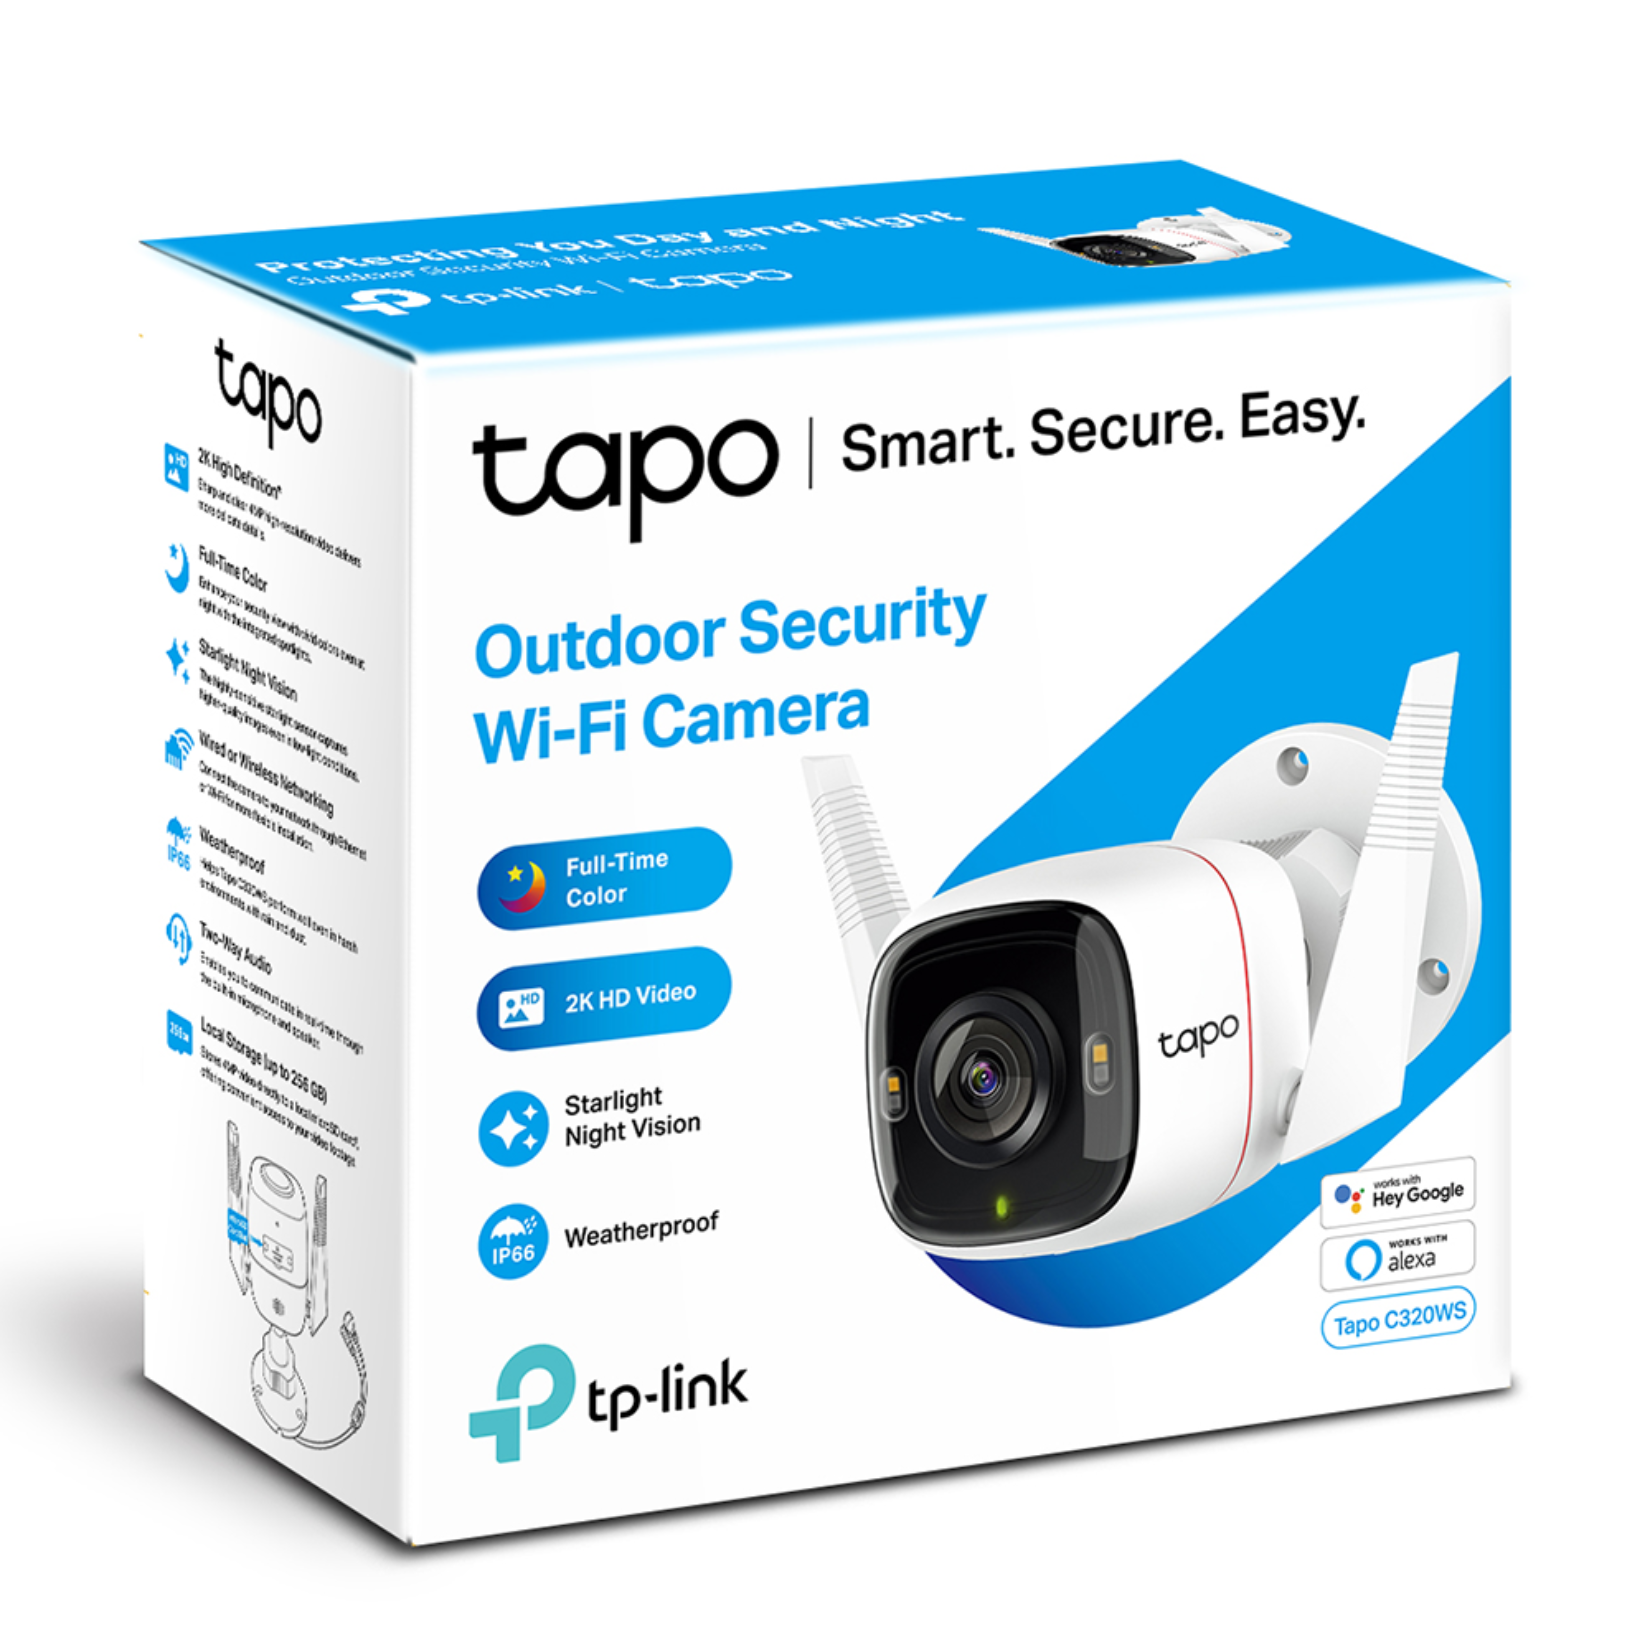 TP-LINK Cámara Vigilancia WiFi interior Tapo C100